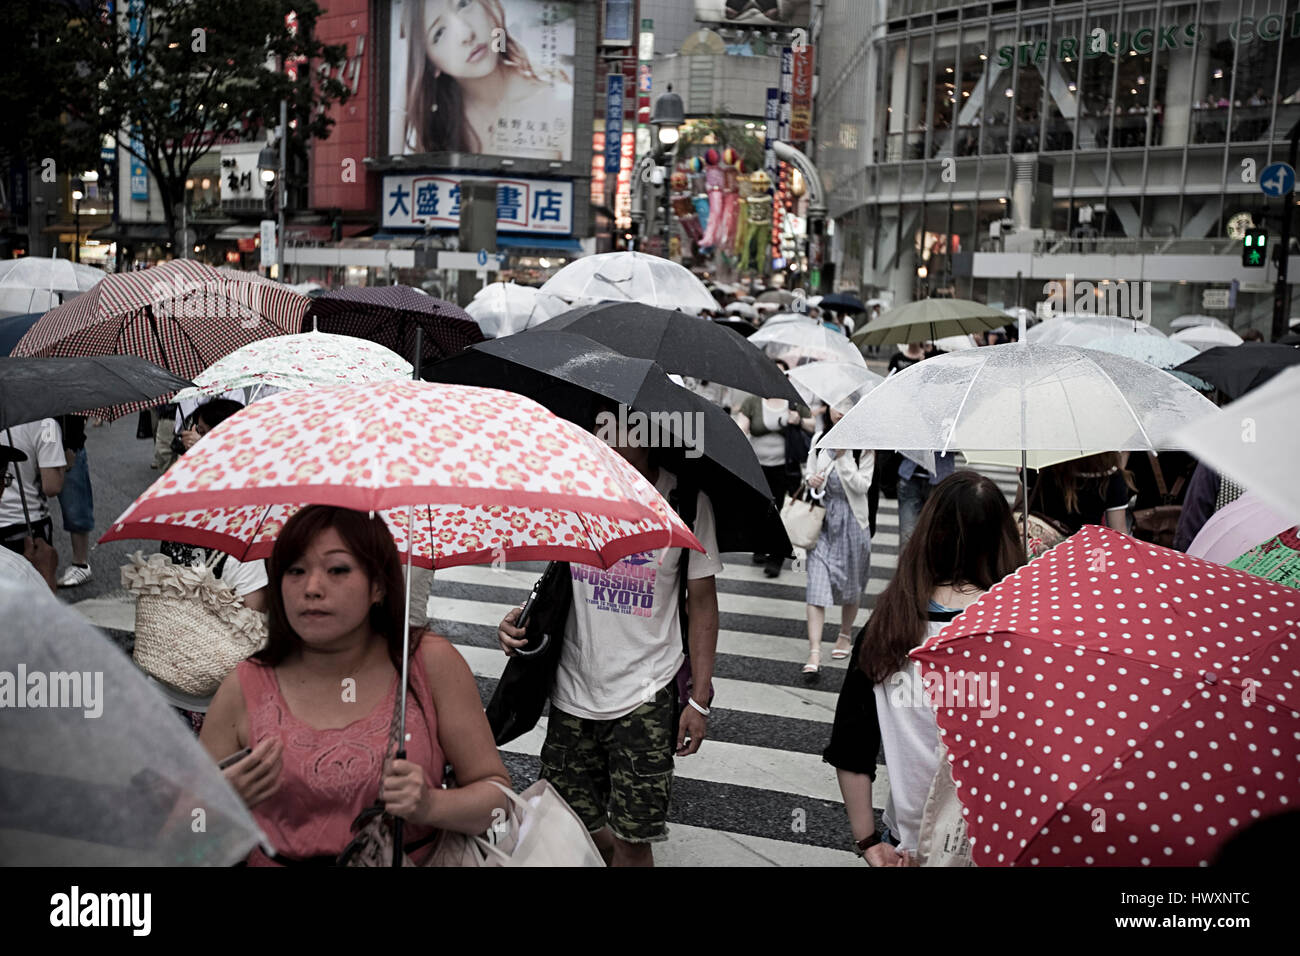 Jour de pluie dans le quartier de Shibuya, Tokyo. Shibuya est célèbre pour l'un des centres de la mode du Japon pour les jeunes et comme une importante vie nocturne. Banque D'Images